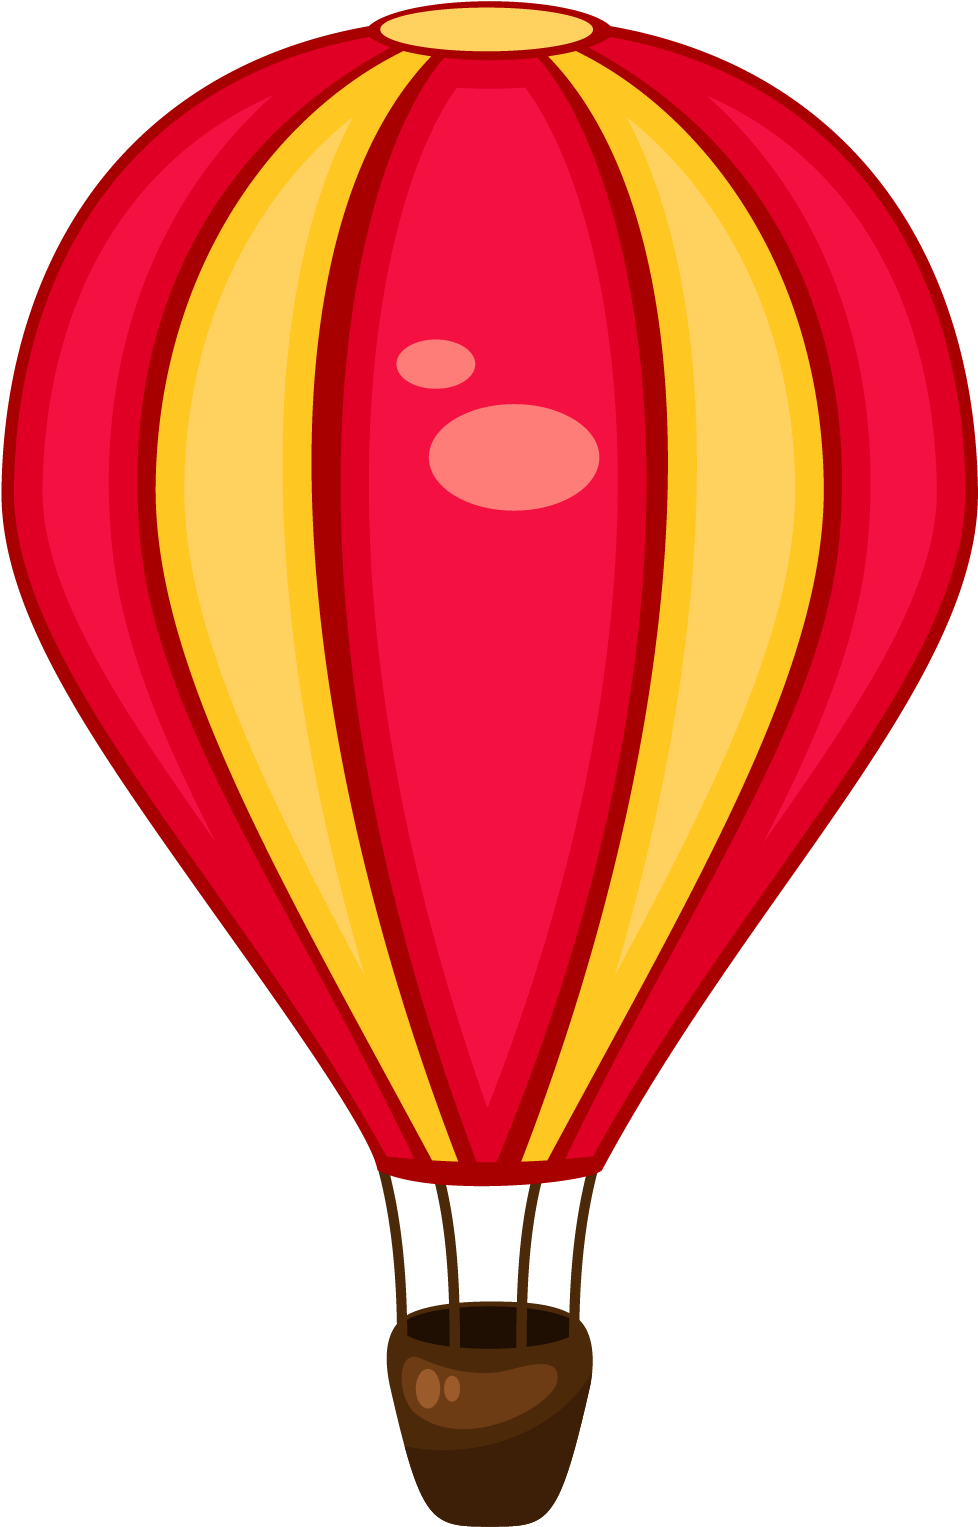 Hot Air Balloon Cartoon Illustration - Transportation Cartoon (1185x1860)